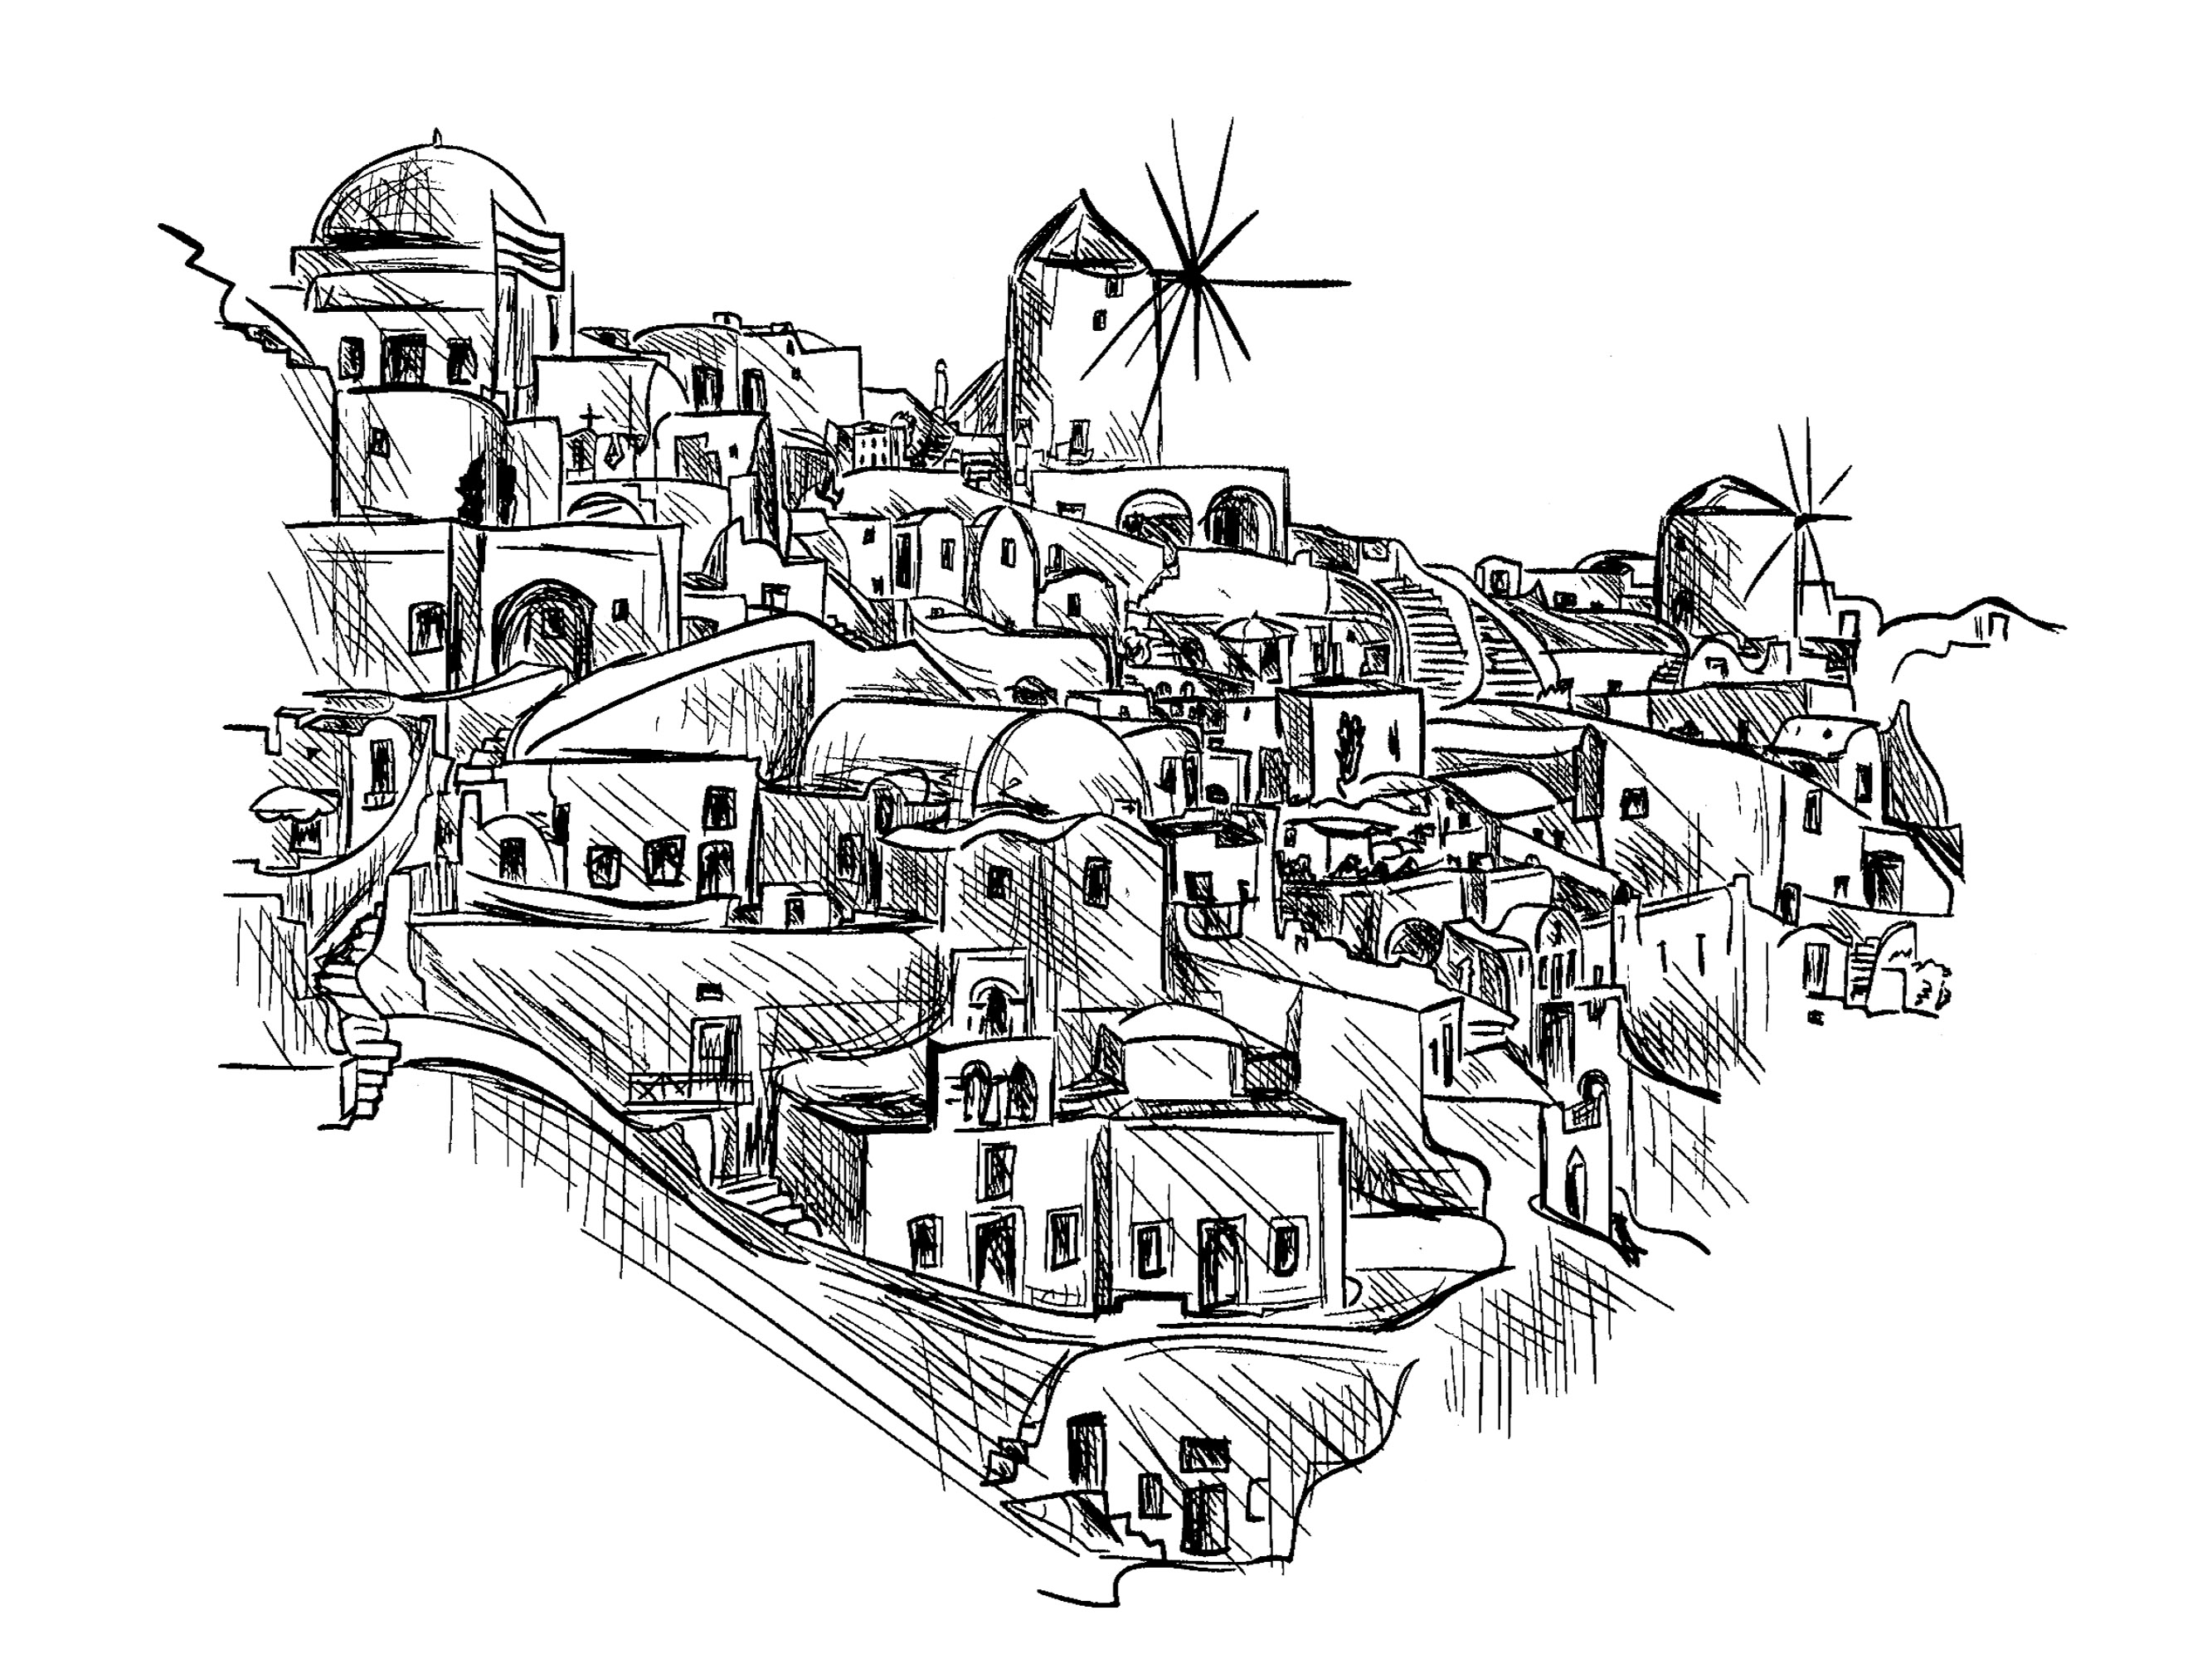 Desenho de uma aldeia tradicional na Grécia com um moinho de vento e casas bonitas